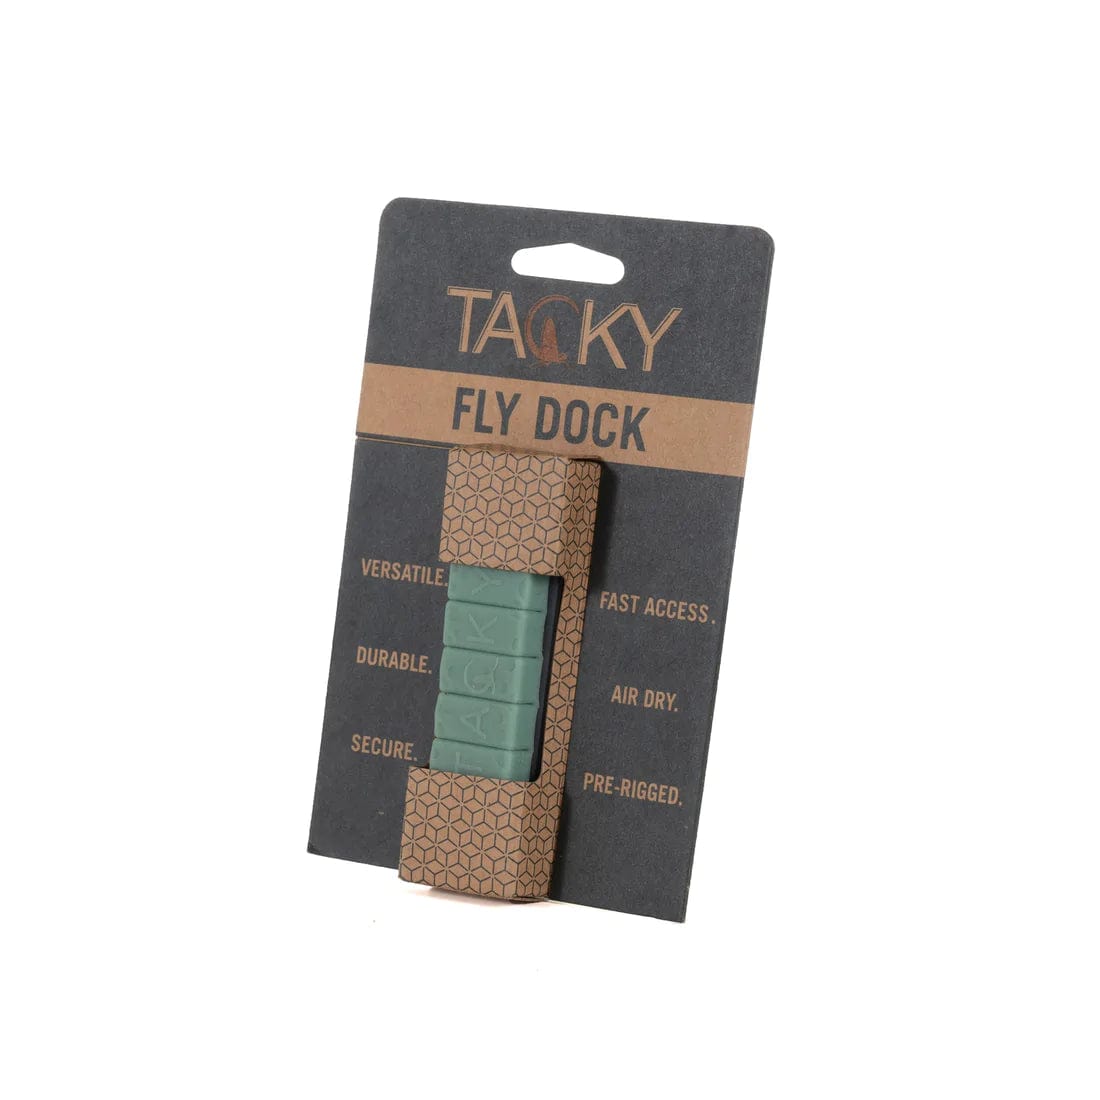 Tacky Fly Dock 2.0